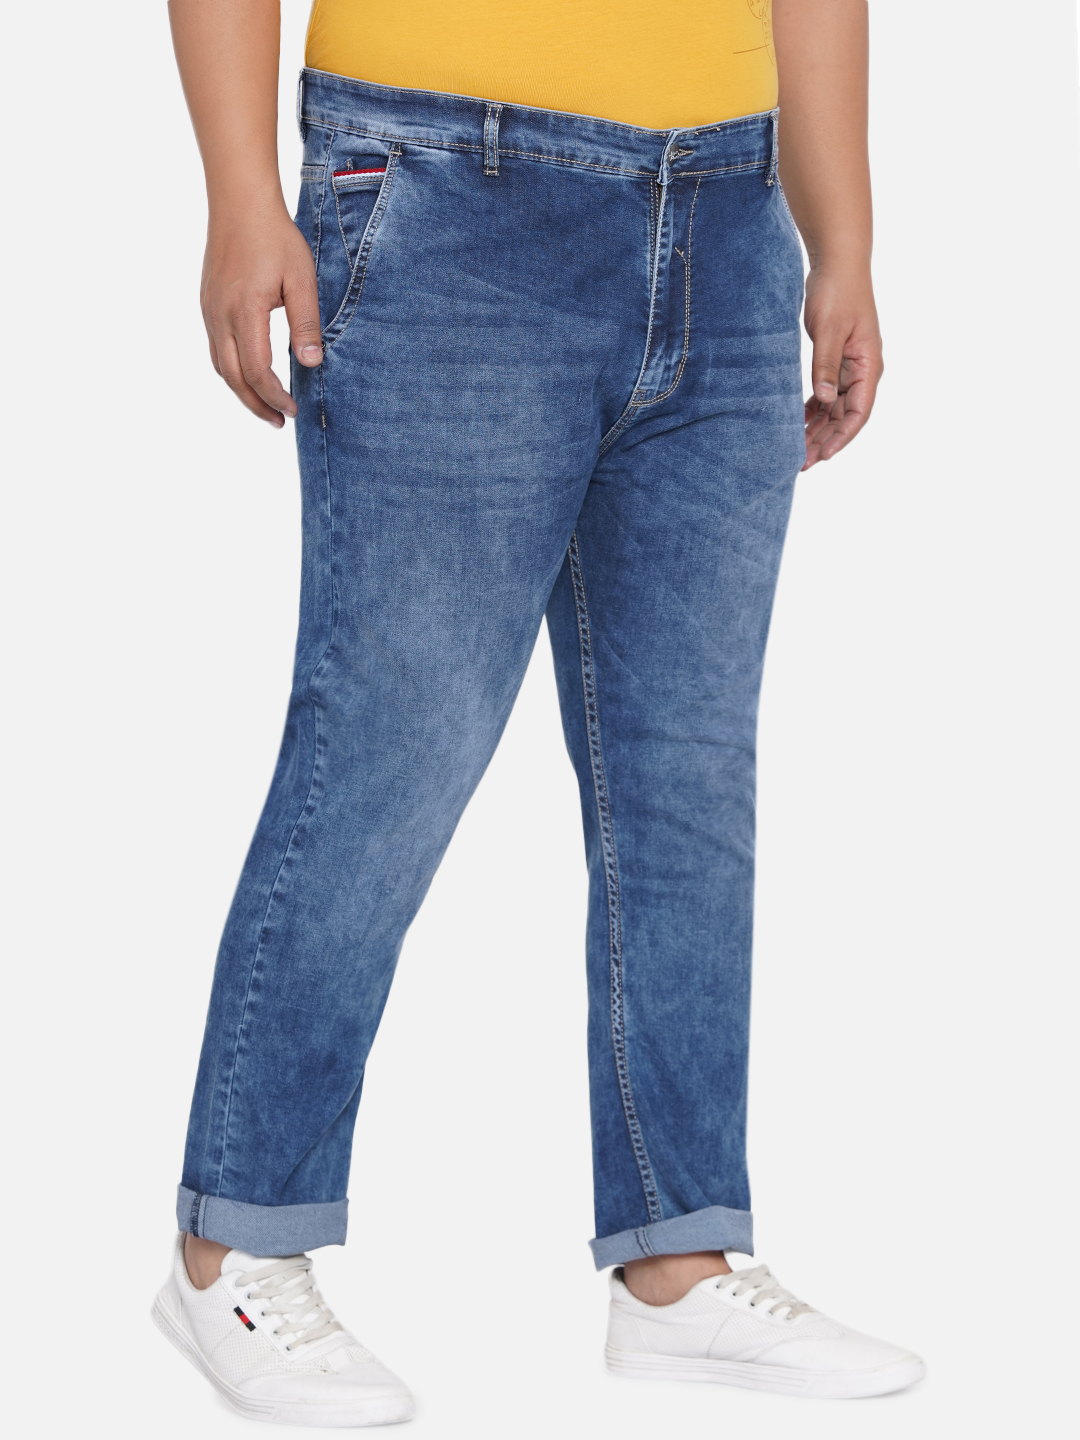 bottomwear/jeans/EJPJ25021/ejpj25021-3.jpg